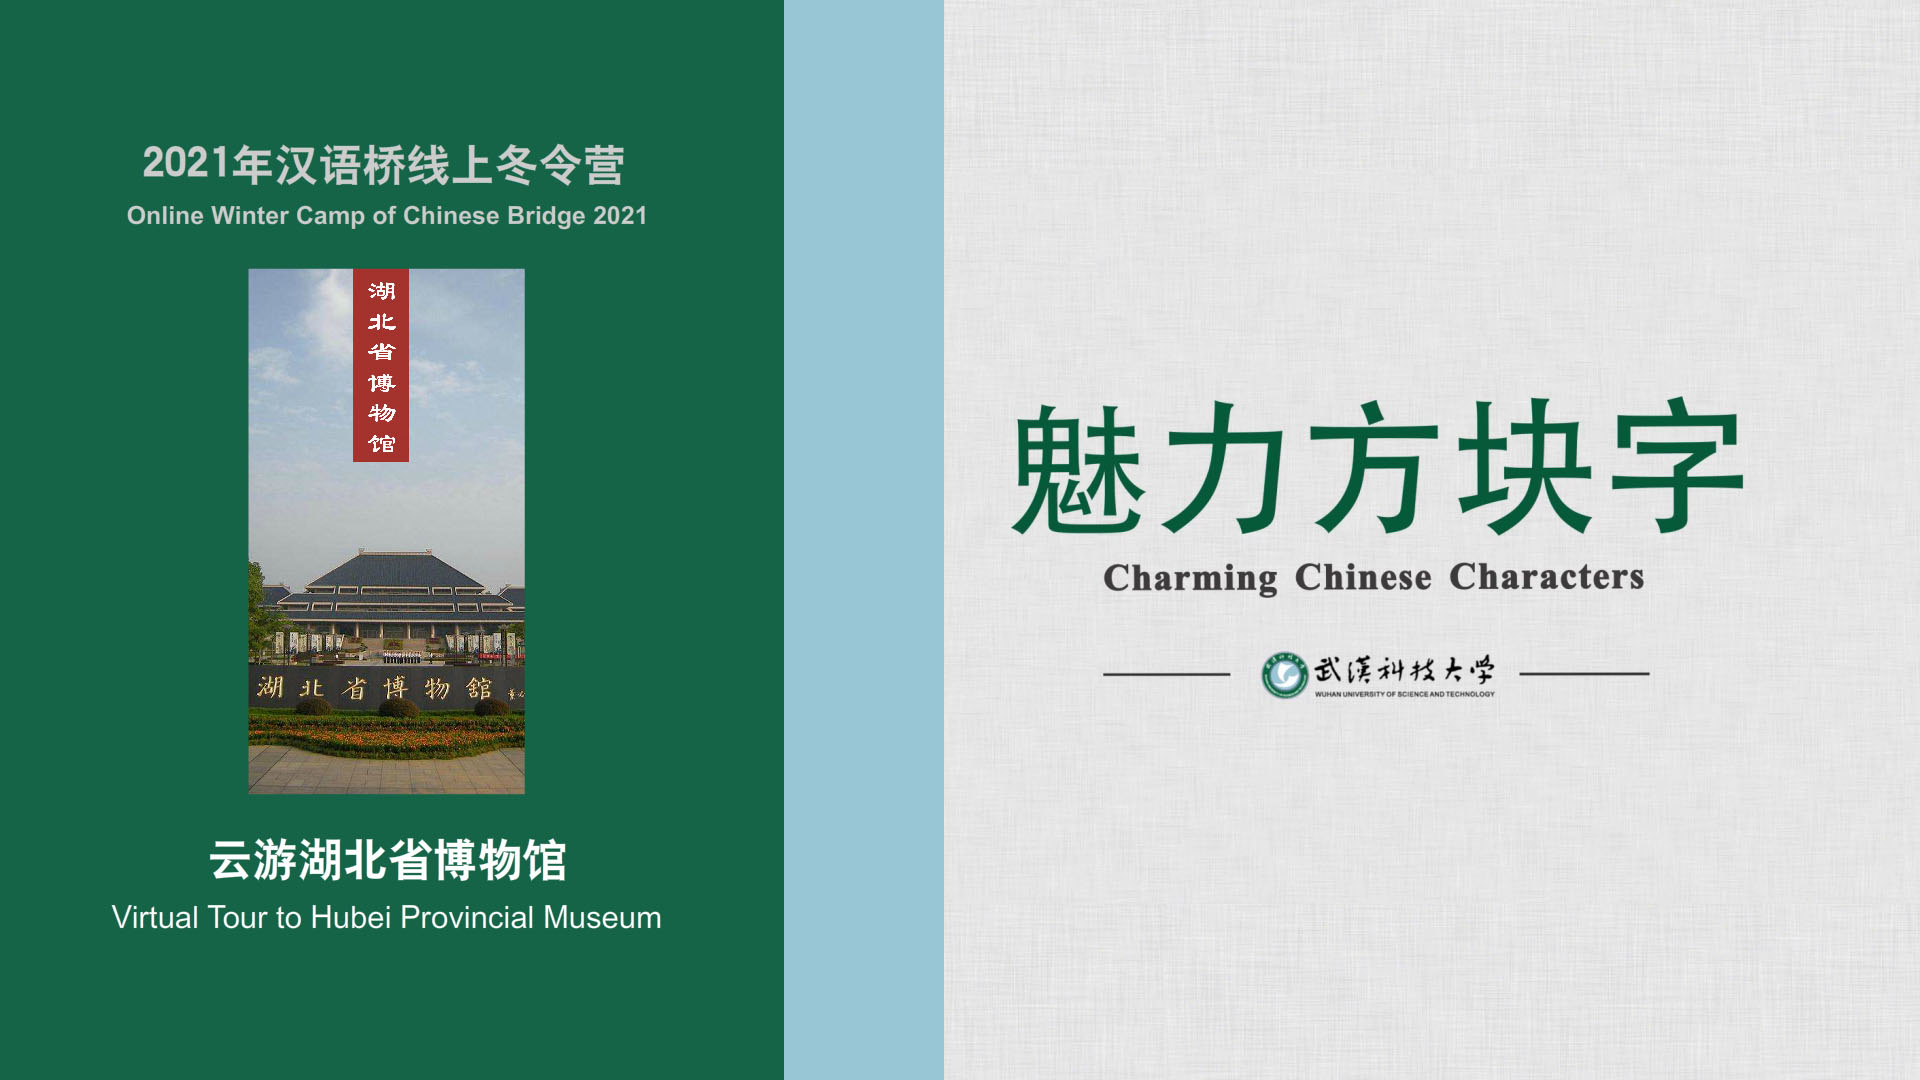 Virtual Tour to Hubei Provincial Museum